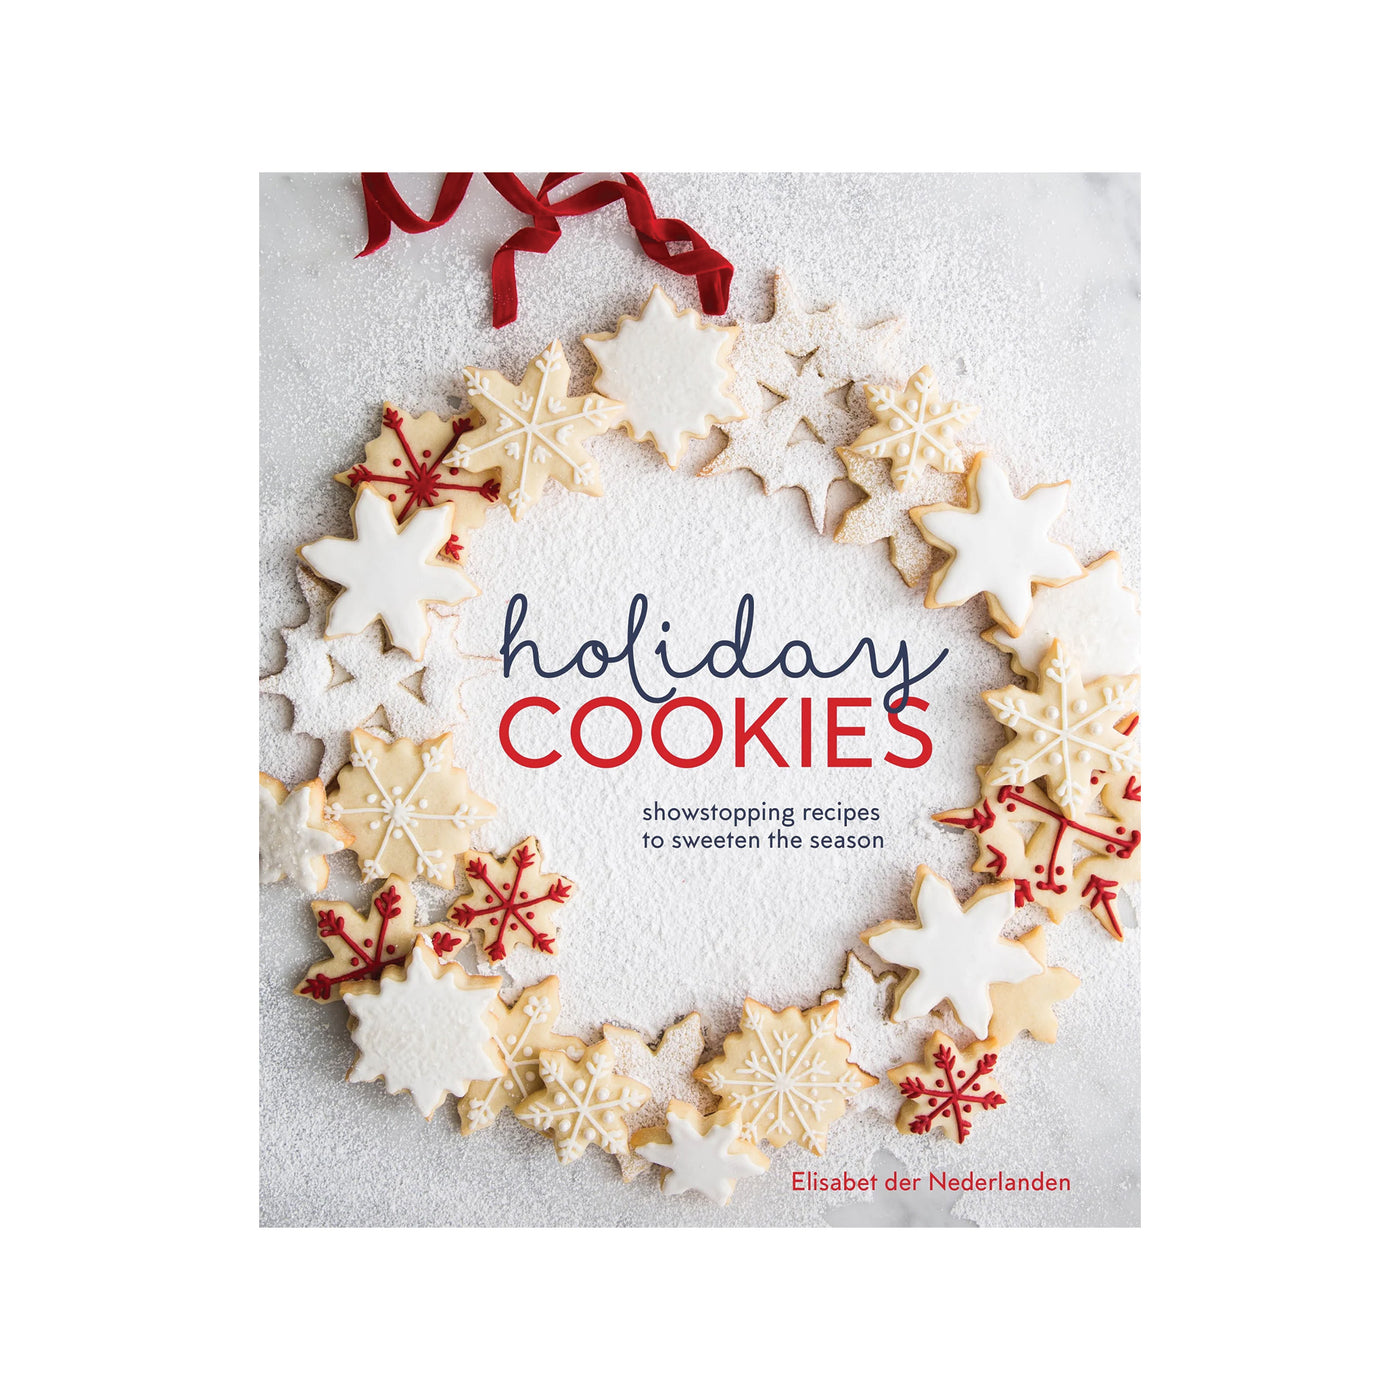 Elisabet der Nederlanden | Holiday Cookies